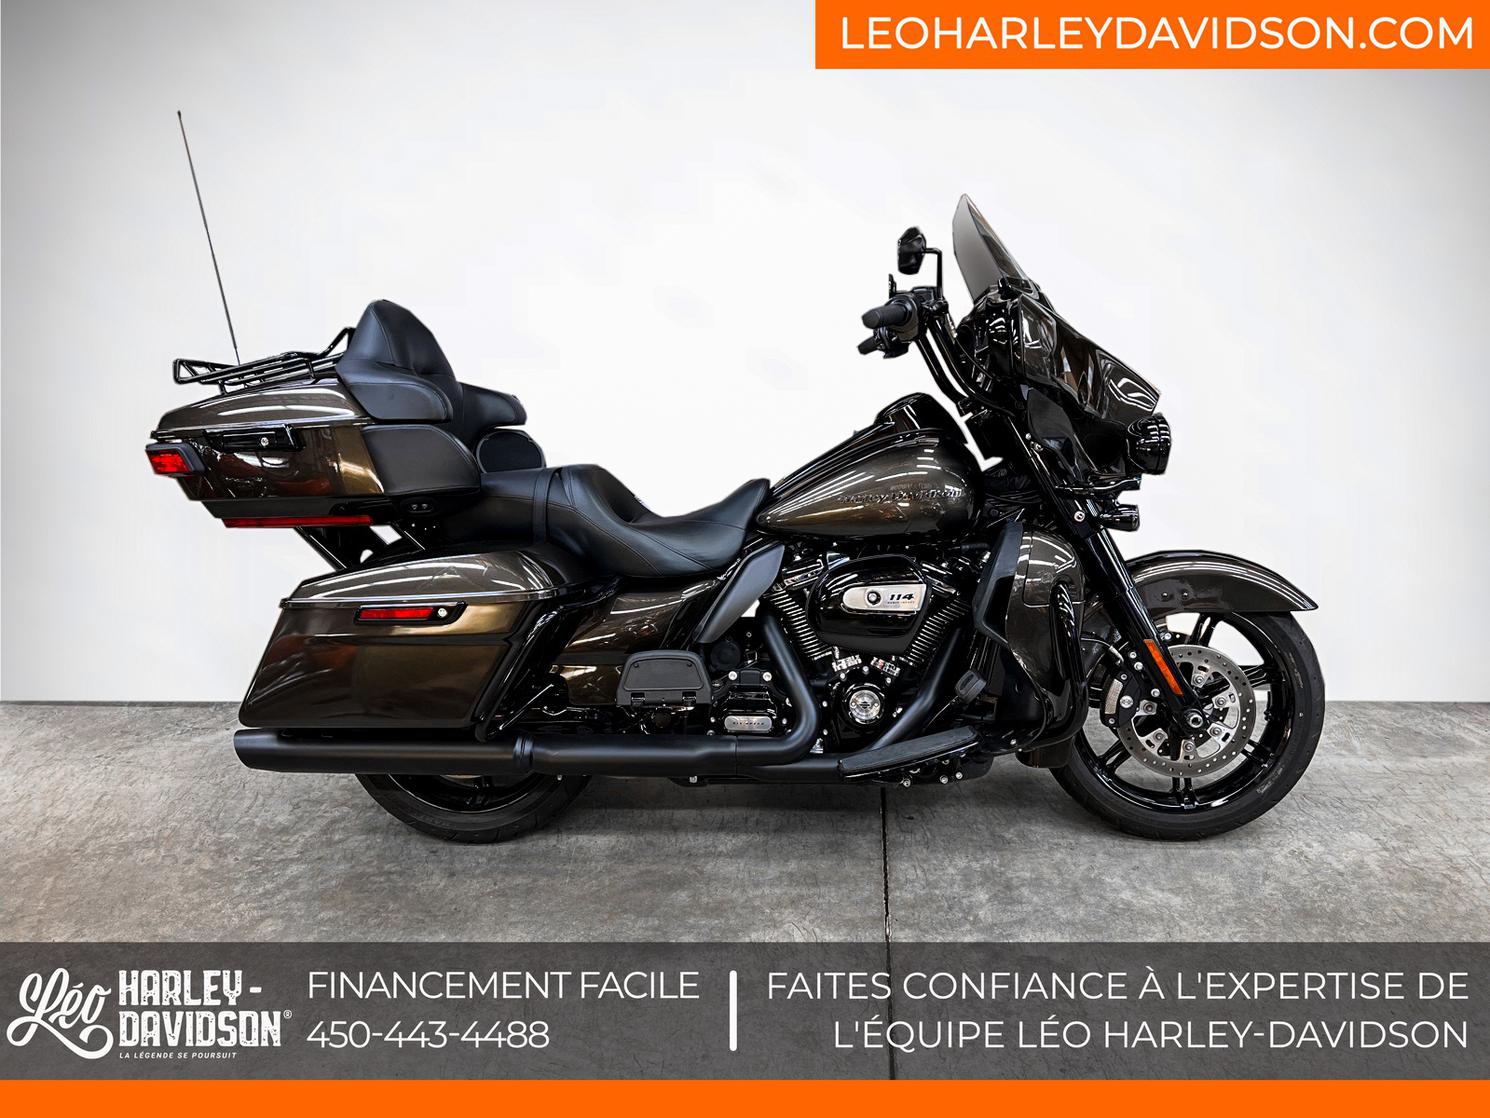 2020 Harley-Davidson FL-Electra Gilde Ultra Limited - FLHTK